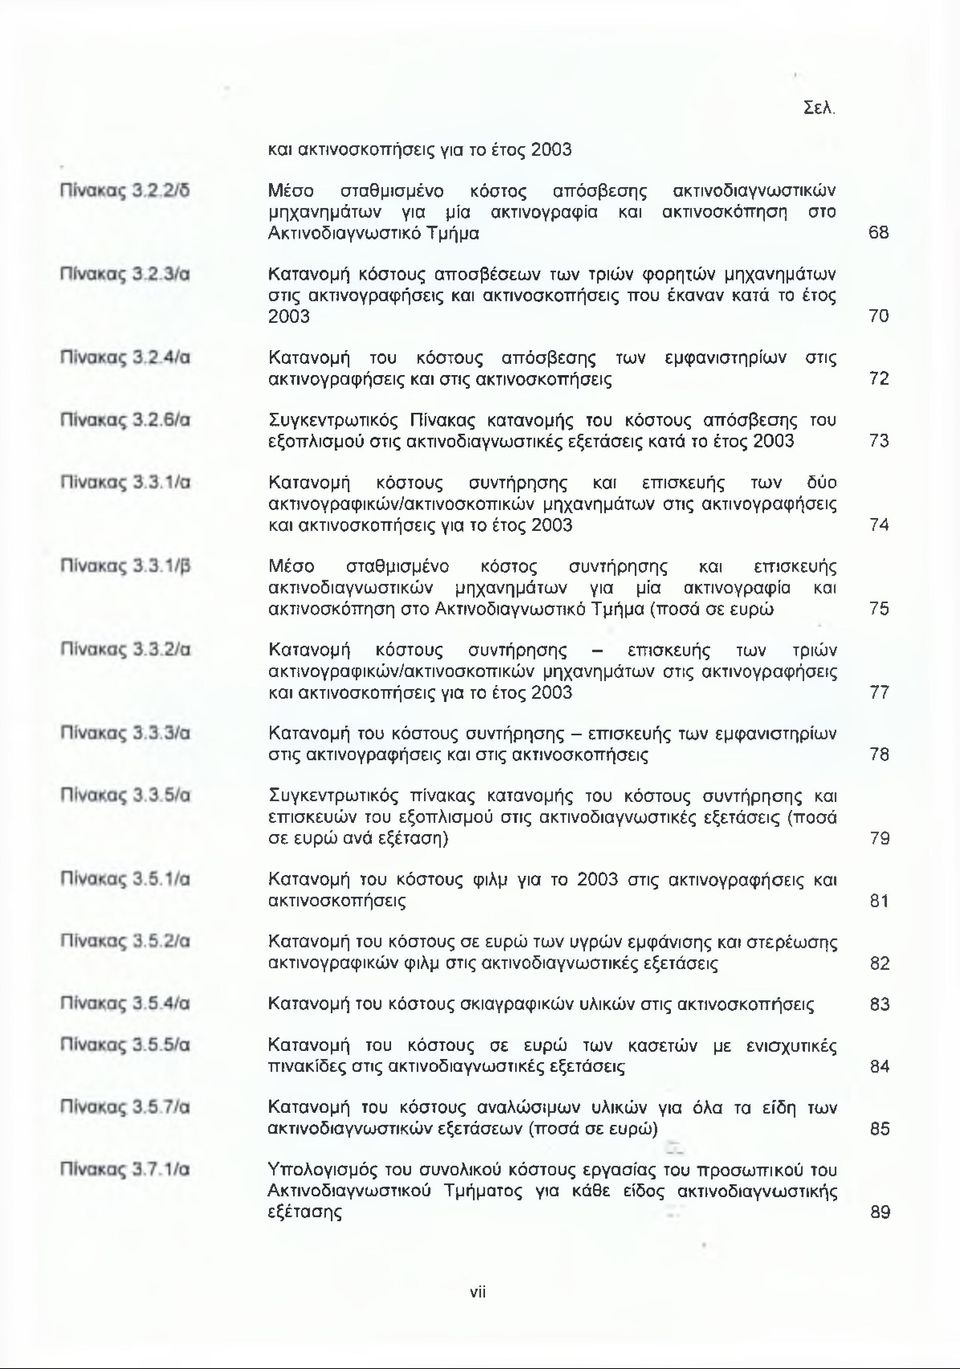 ακτινοσκοπήσεις Συγκεντρωτικός Πίνακας κατανομής του κόστους απόσβεσης του εξοπλισμού στις ακτινοδιαγνωστικές εξετάσεις κατά το έτος 2003 Κατανομή κόστους συντήρησης και επισκευής των δύο